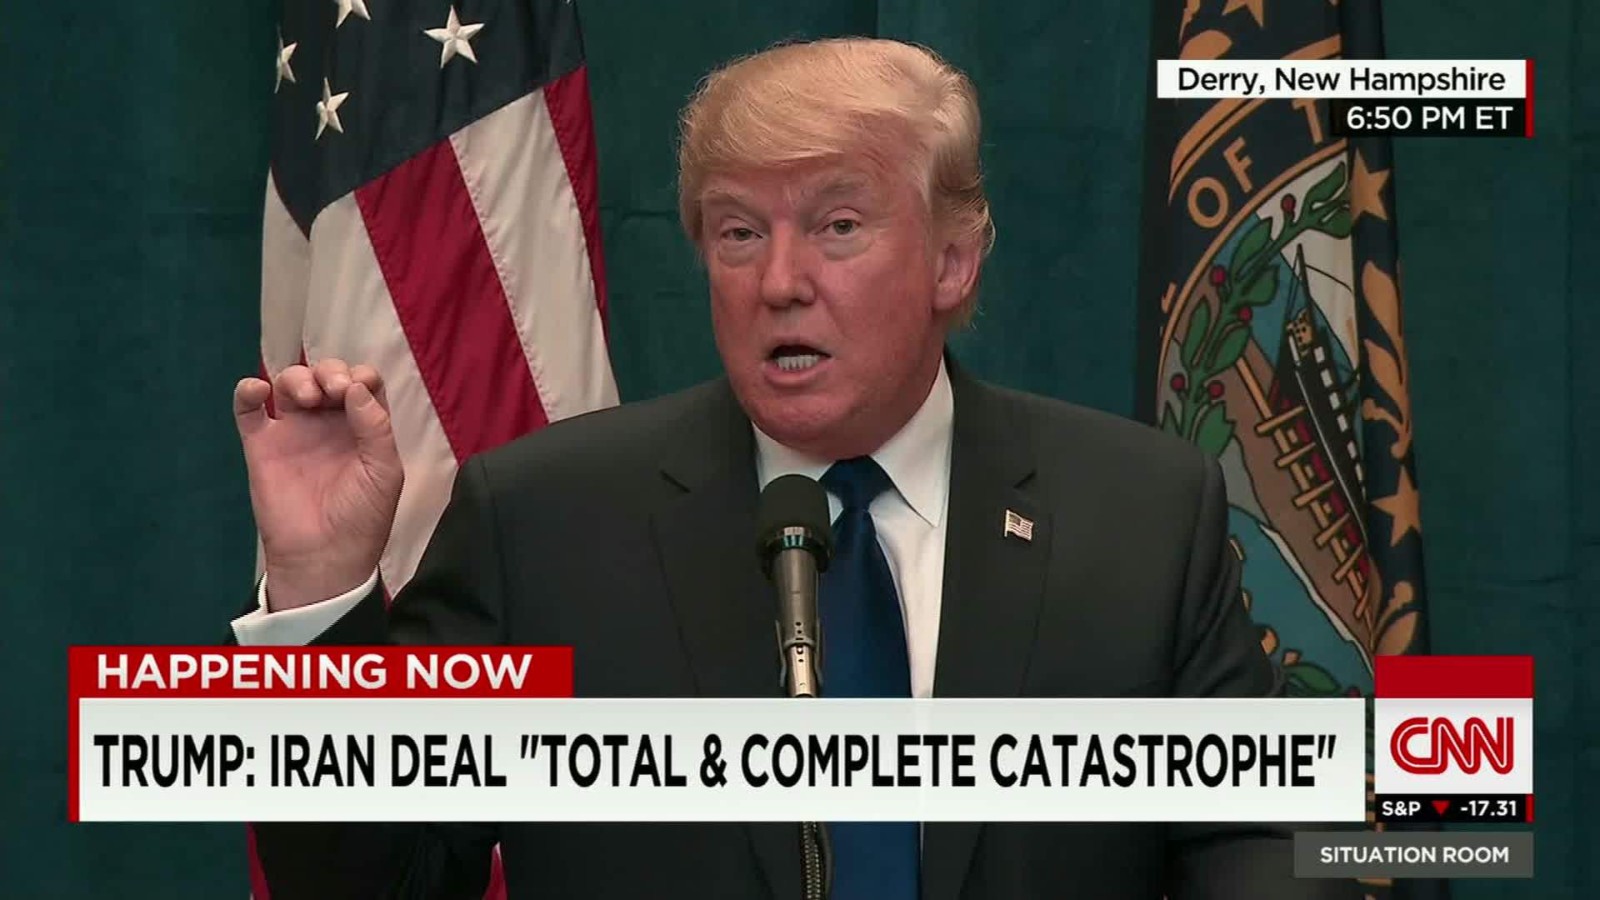 Il presidente Donald Trump, dichiarazioni contro l'Iran.